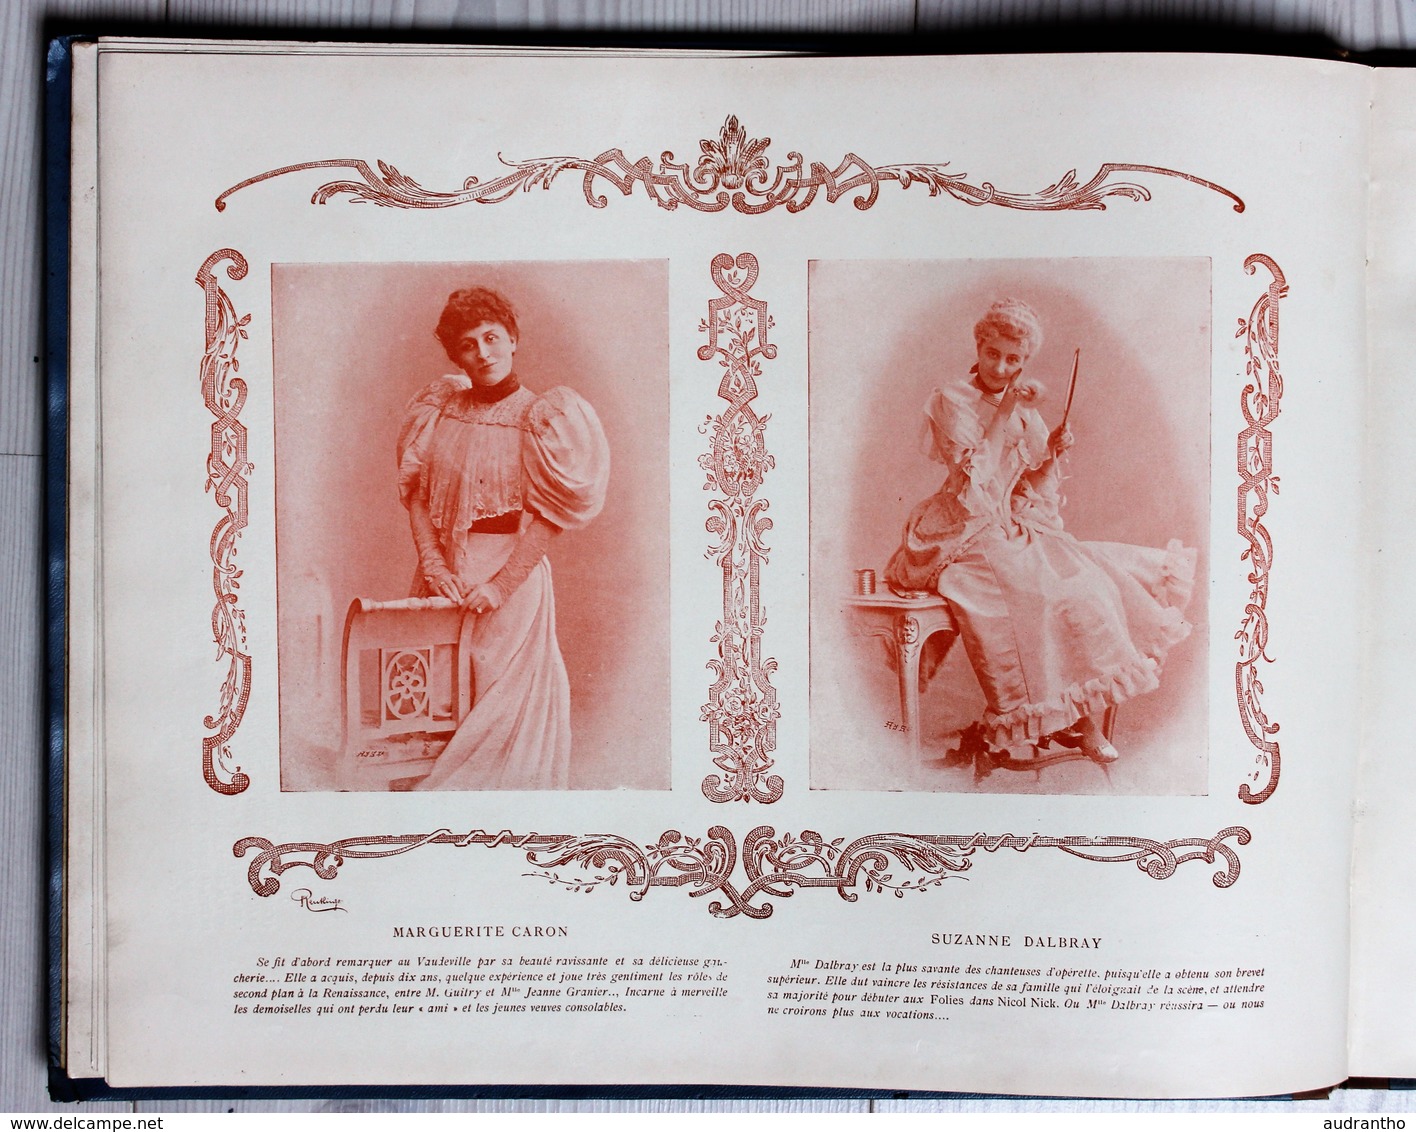 livre nos jolies actrices photographiées par Reutlinger Ludovic Baschet Sarah Bernhardt Cléo de Mérode